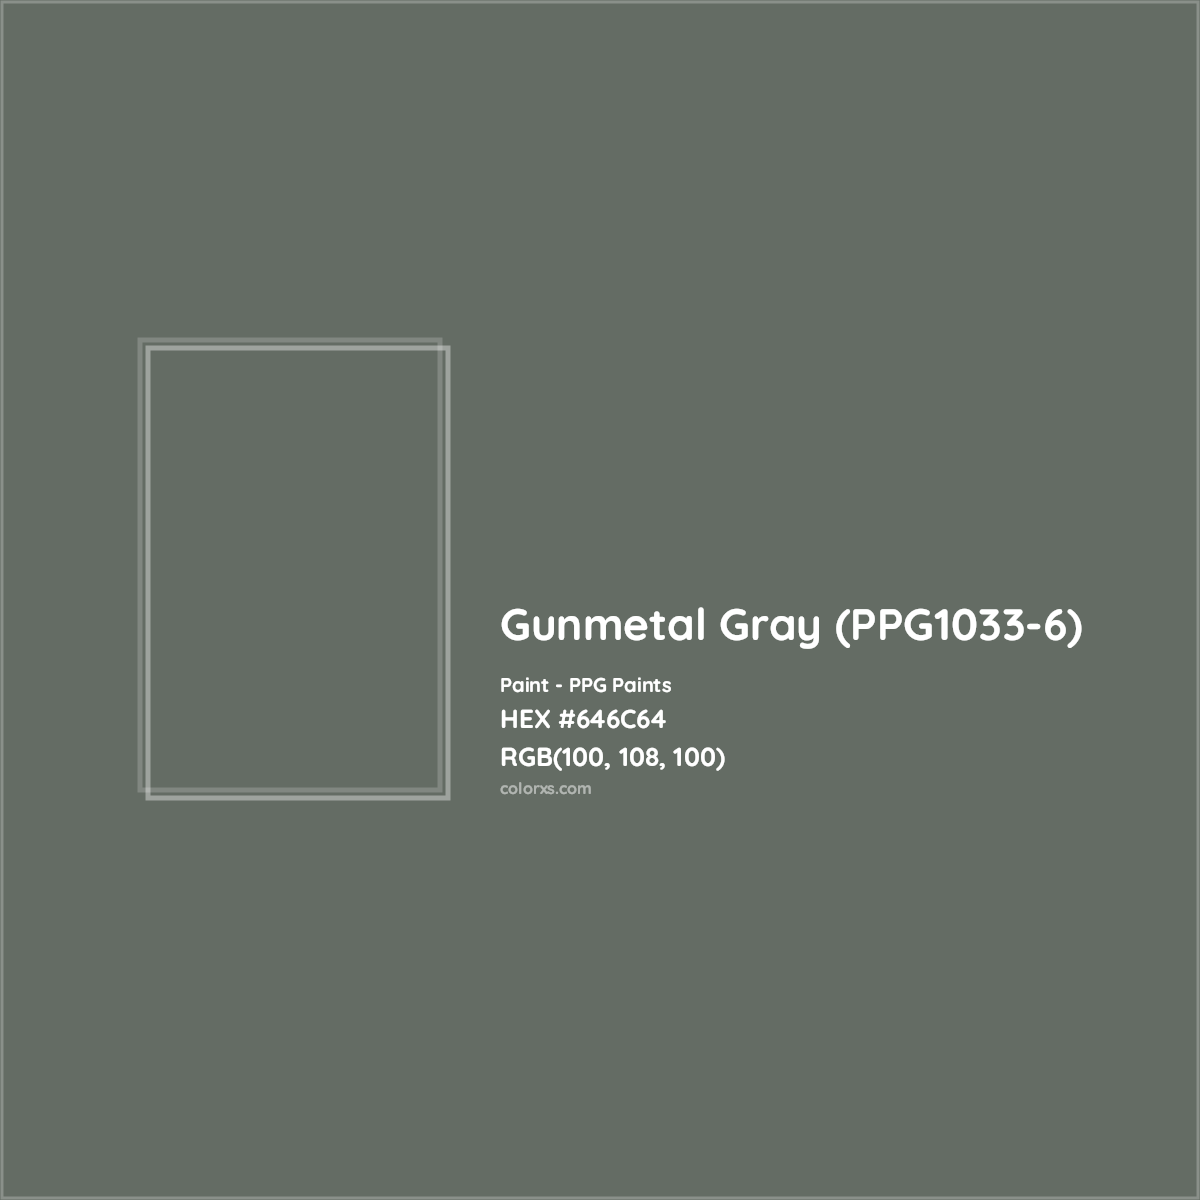 HEX #646C64 Gunmetal Gray (PPG1033-6) Paint PPG Paints - Color Code